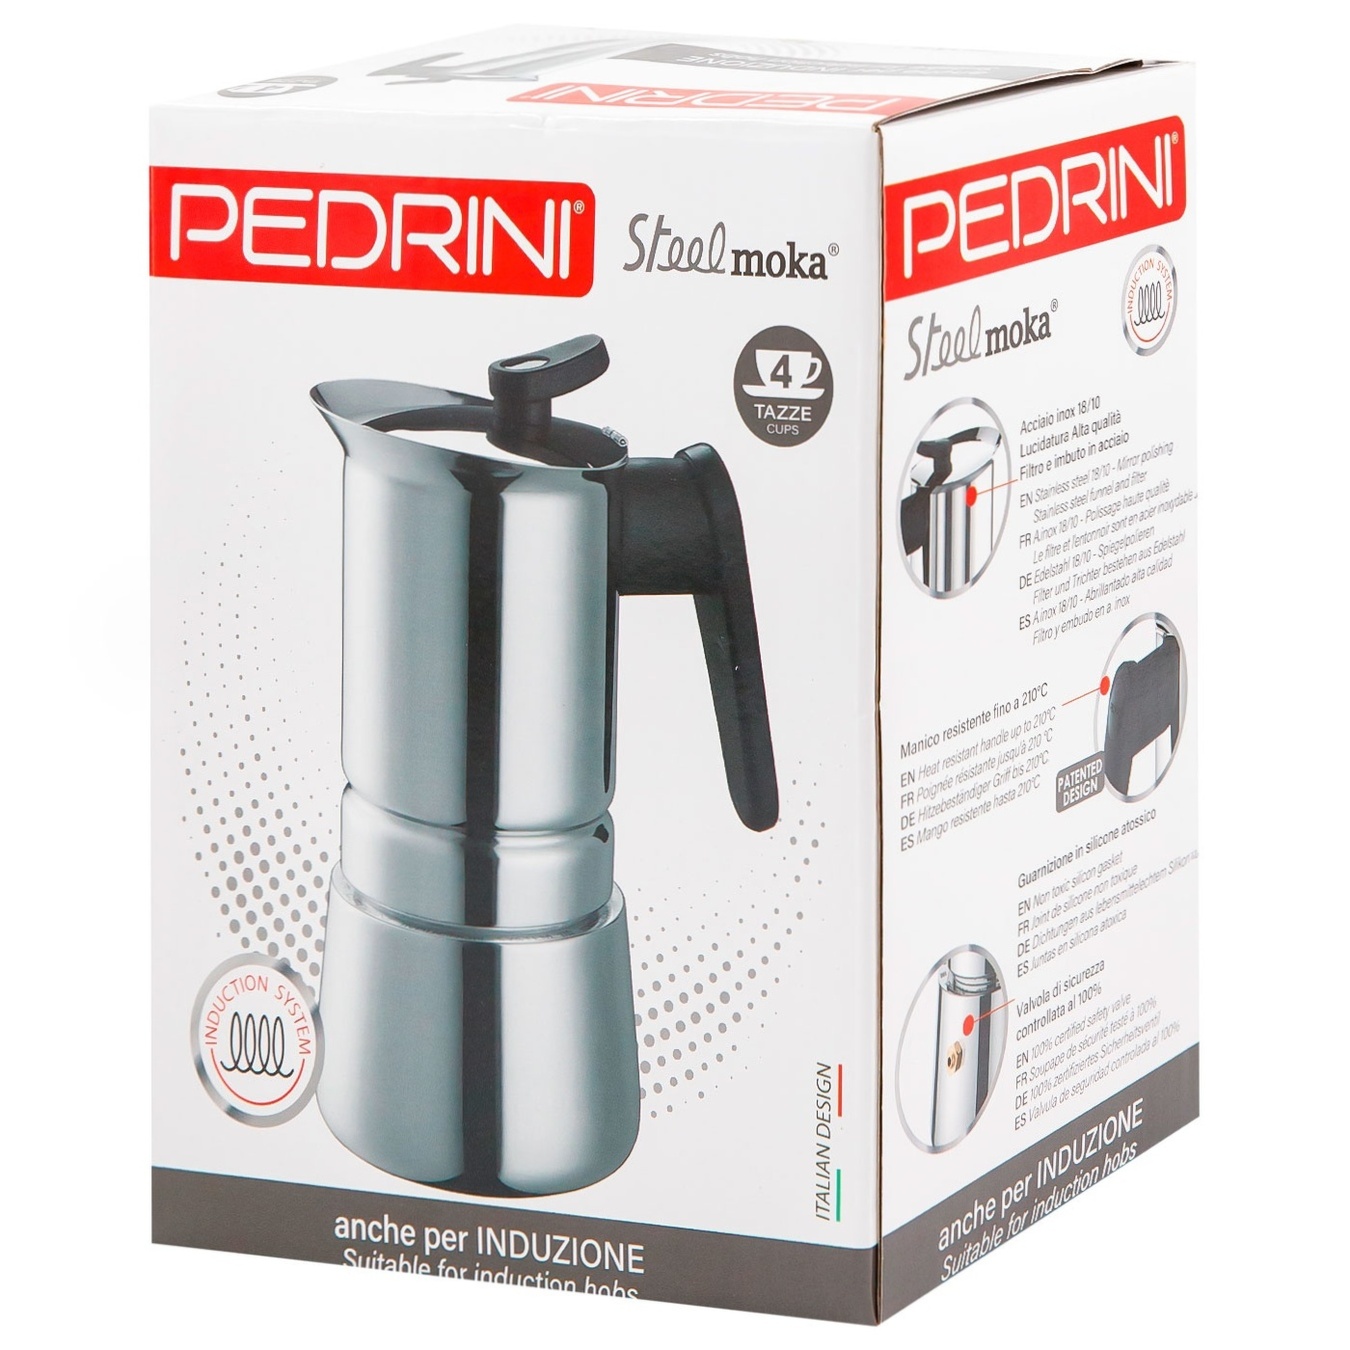 Ấm pha cà phê PEDRINI Steel Moka Induction - Stainless steel 18/10 - 4 cup/ 6 cup [Hàng Chính Hãng ] - Sử dụng được cho bếp từ